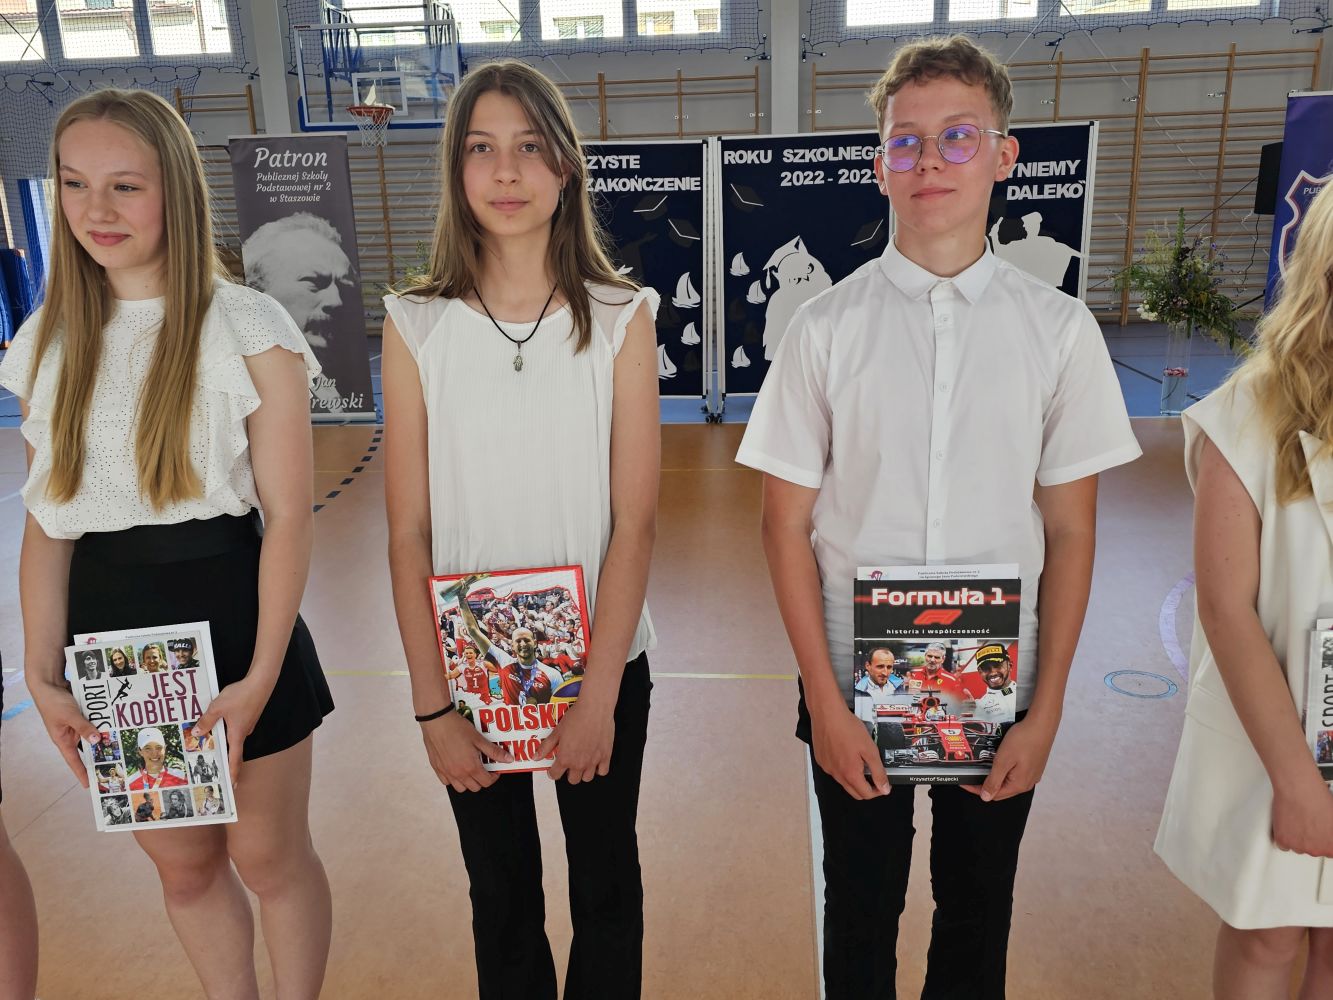 Troje uczniów z nagrodami książkowymi za osiągnięcia sportowe stoją na tle dekoracji